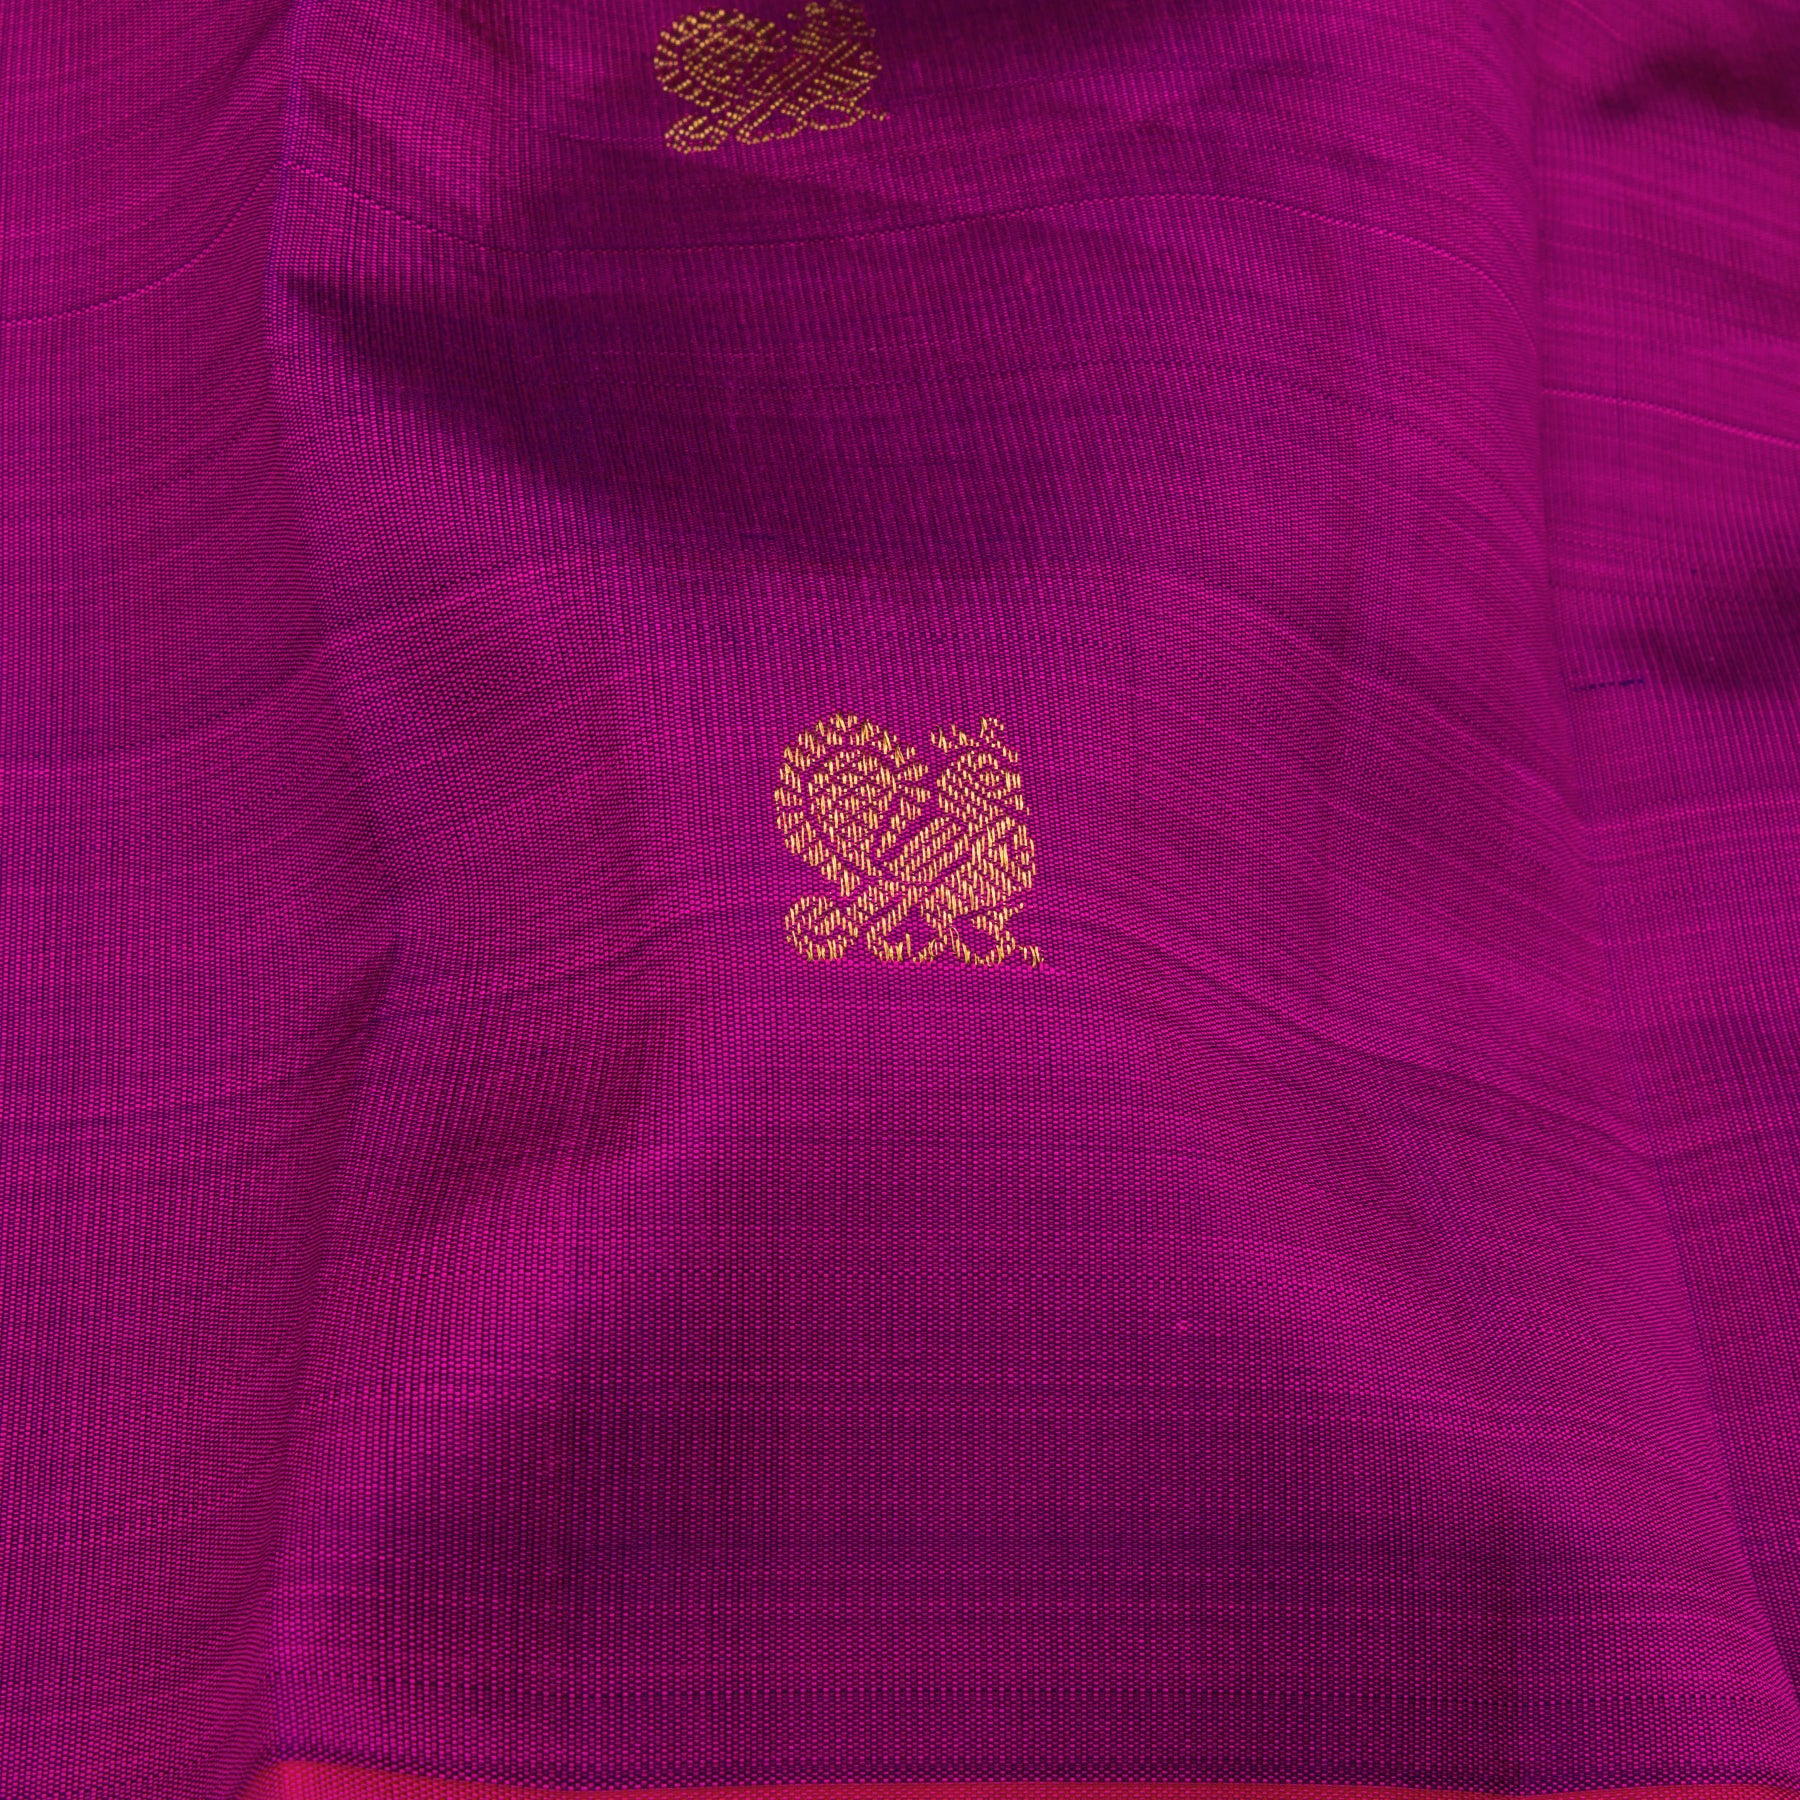 Kanakavalli Kanjivaram Silk Sari 23-595-HS001-12669 - Fabric View